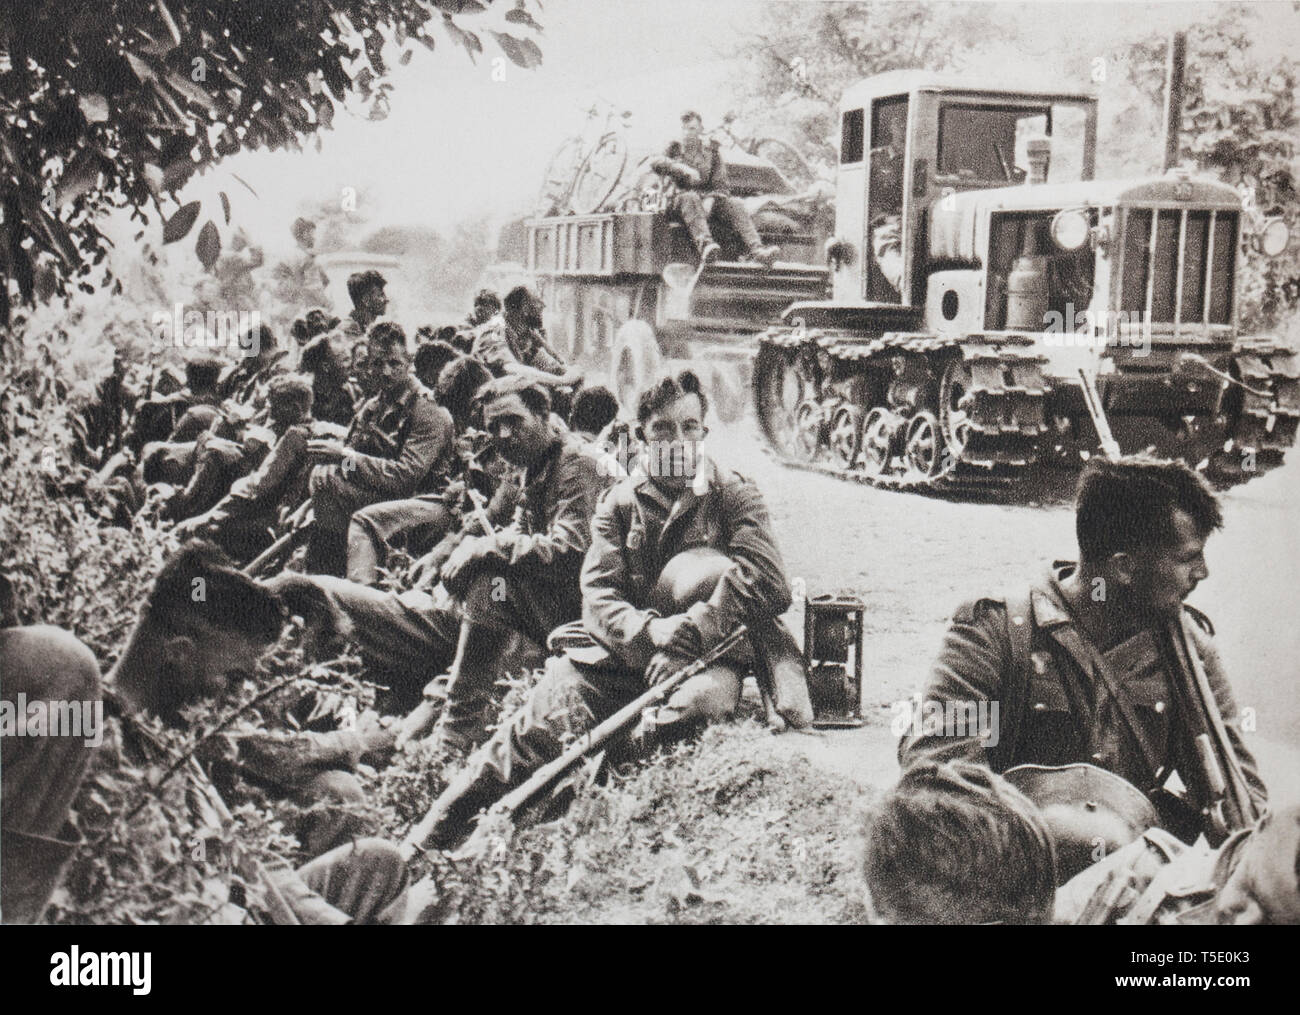 La fanteria tedesca a riposo su una strada dall'Ucraina (1941). Esso soddisfa in parte anteriore di essa solo un paese senza pietà danneggiato dai russi. Foto Stock